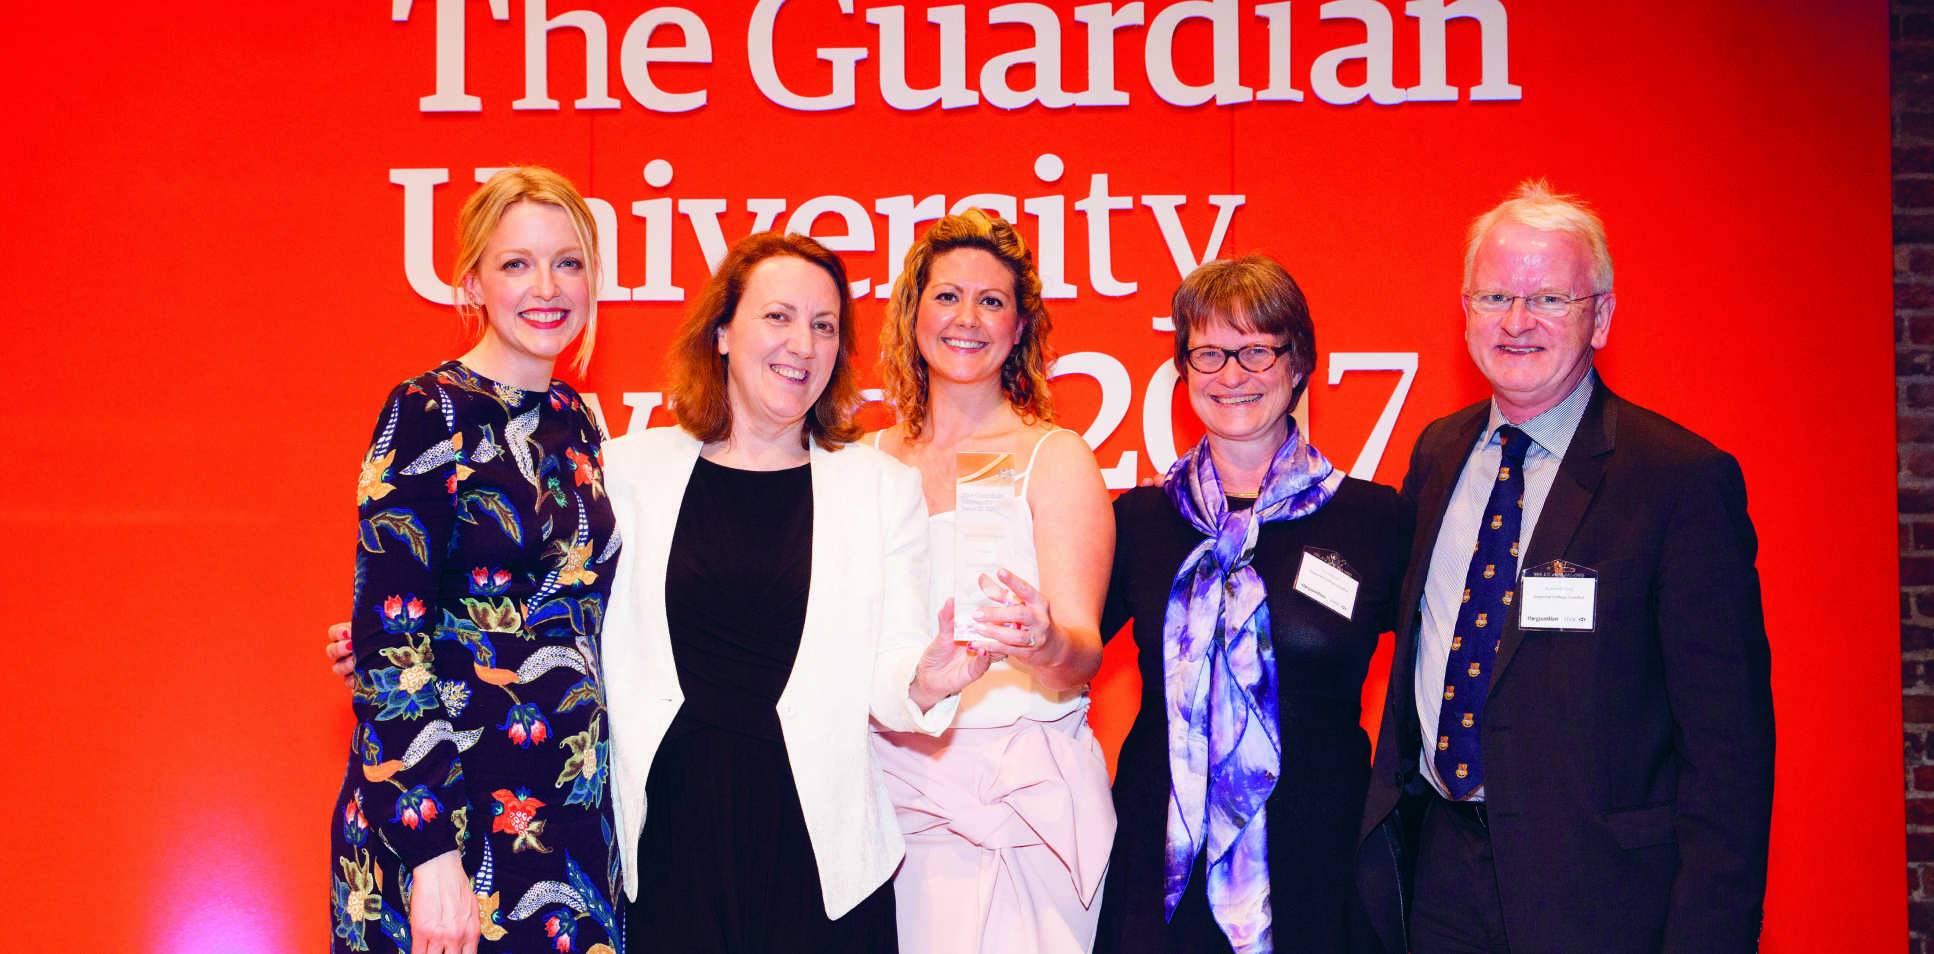 Collecting a Guardian University Award